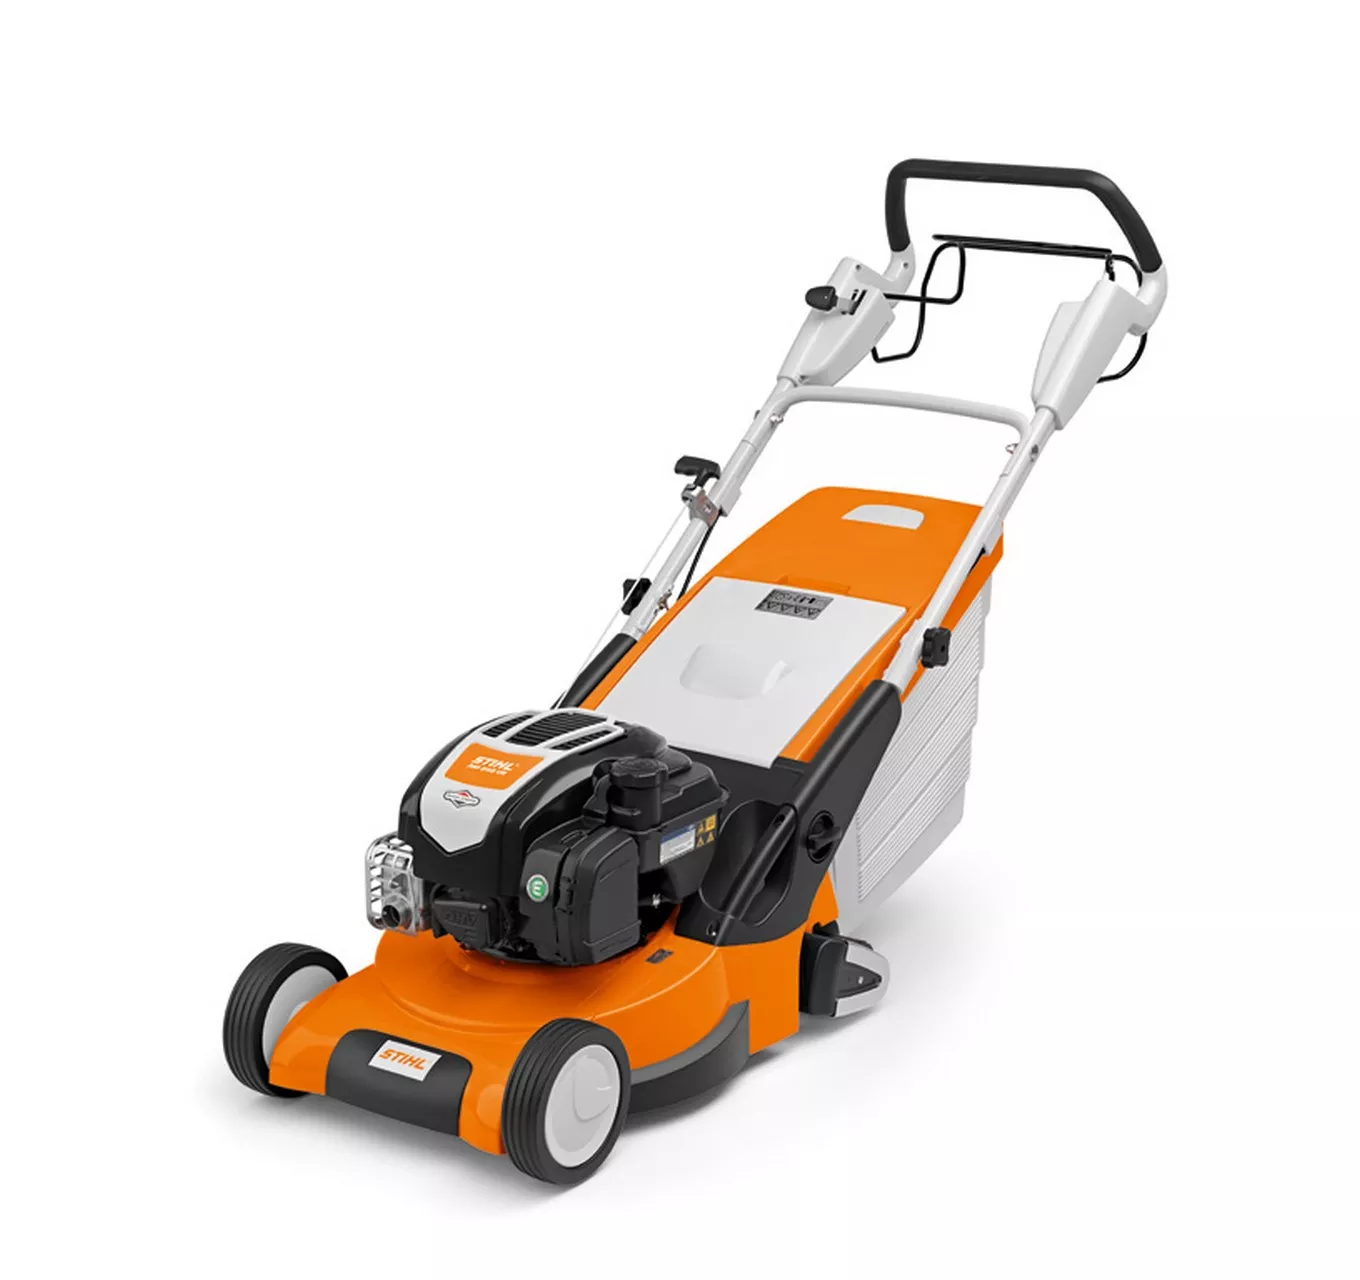 RM 545 VR Lawn Mower